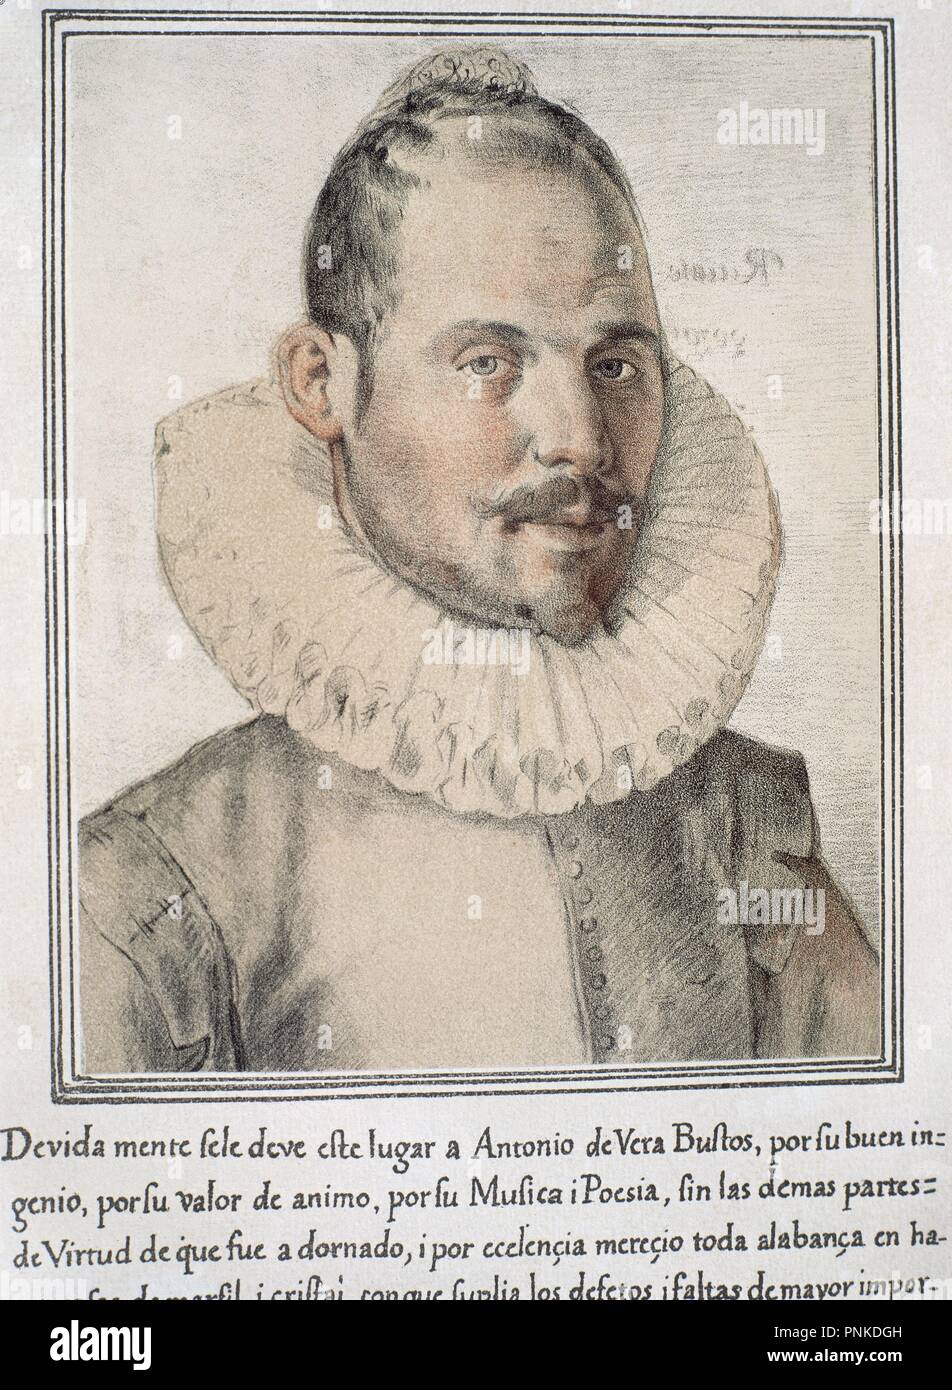 ANTONIO DE VERA BUSTOS - LIBRO DE RETRATOS DE ILUSTRES Y MEMORABLES VARONES - 1599. Author: PACHECO, FRANCISCO. Location: BIBLIOTECA NACIONAL-COLECCION. MADRID. SPAIN. Stock Photo